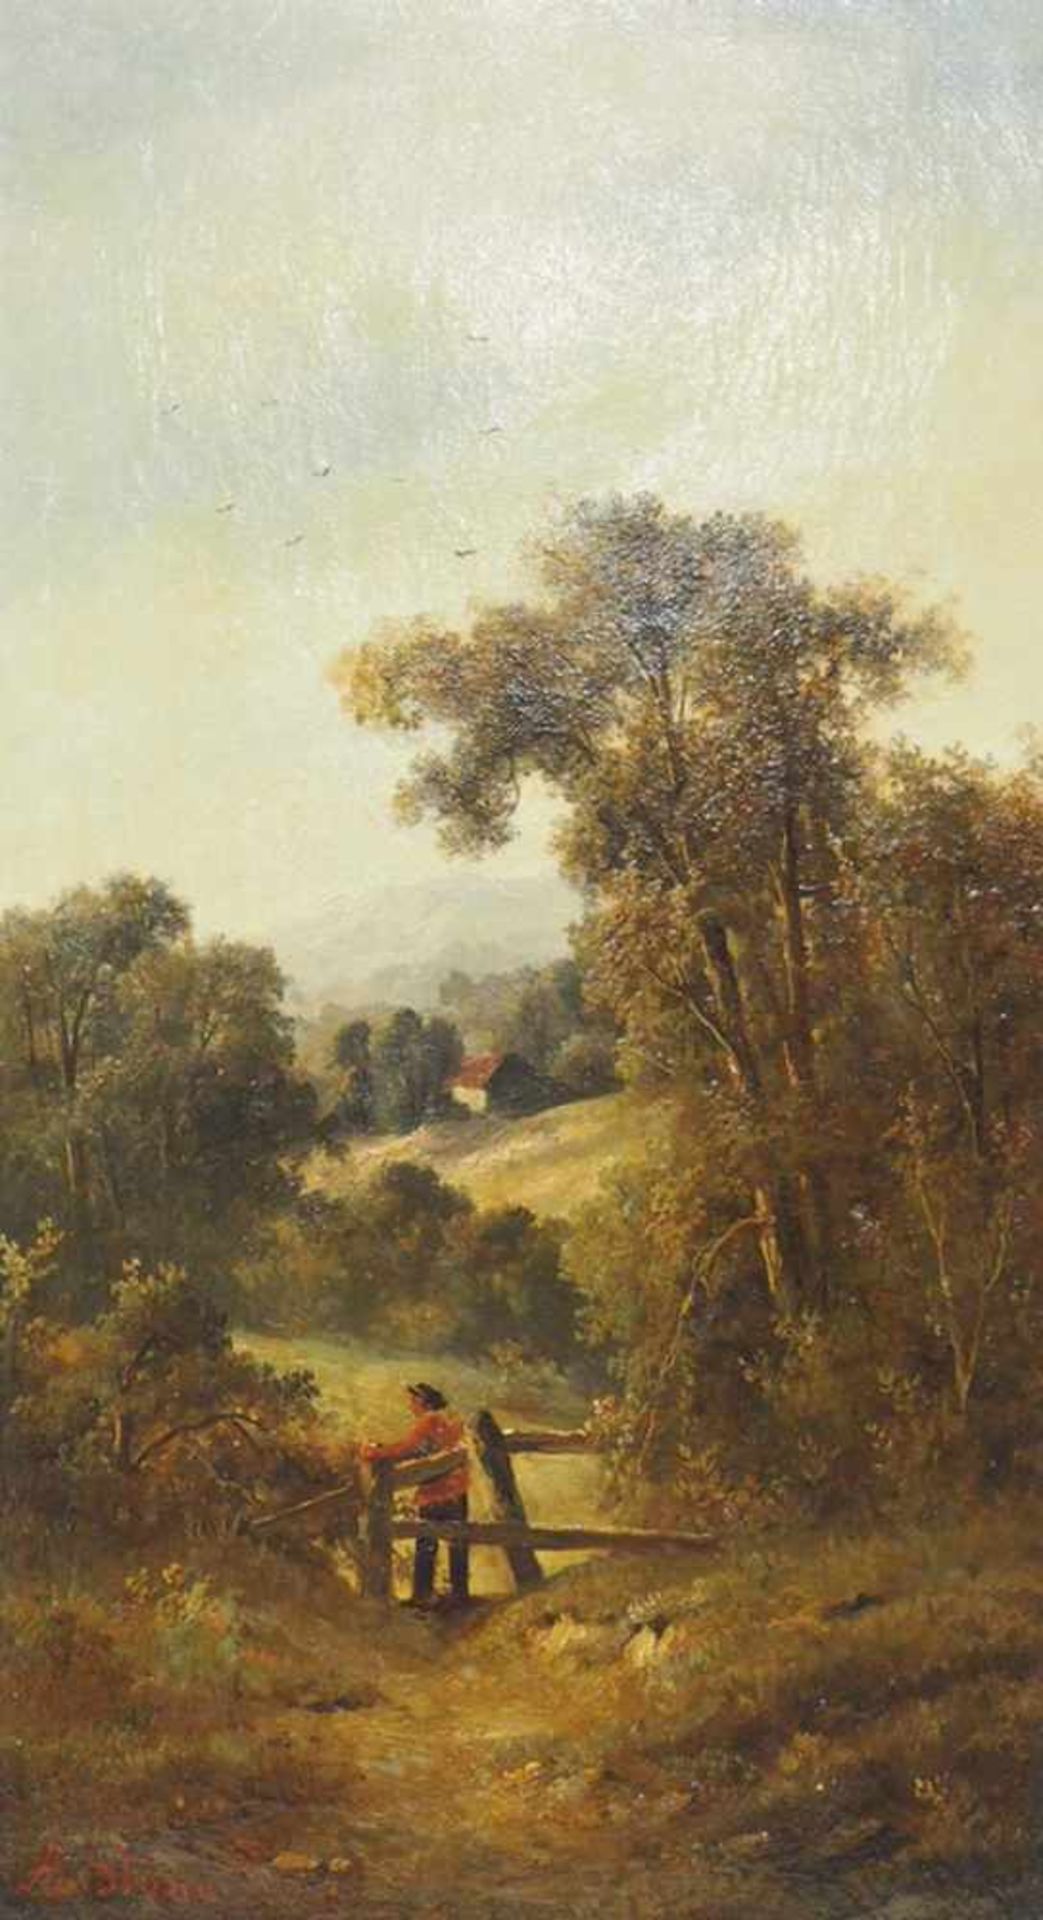 STONE, Alice Balch1876-?Hügellandschaft mit BauerÖl auf Leinwand, signiert unten links, 44 x 24